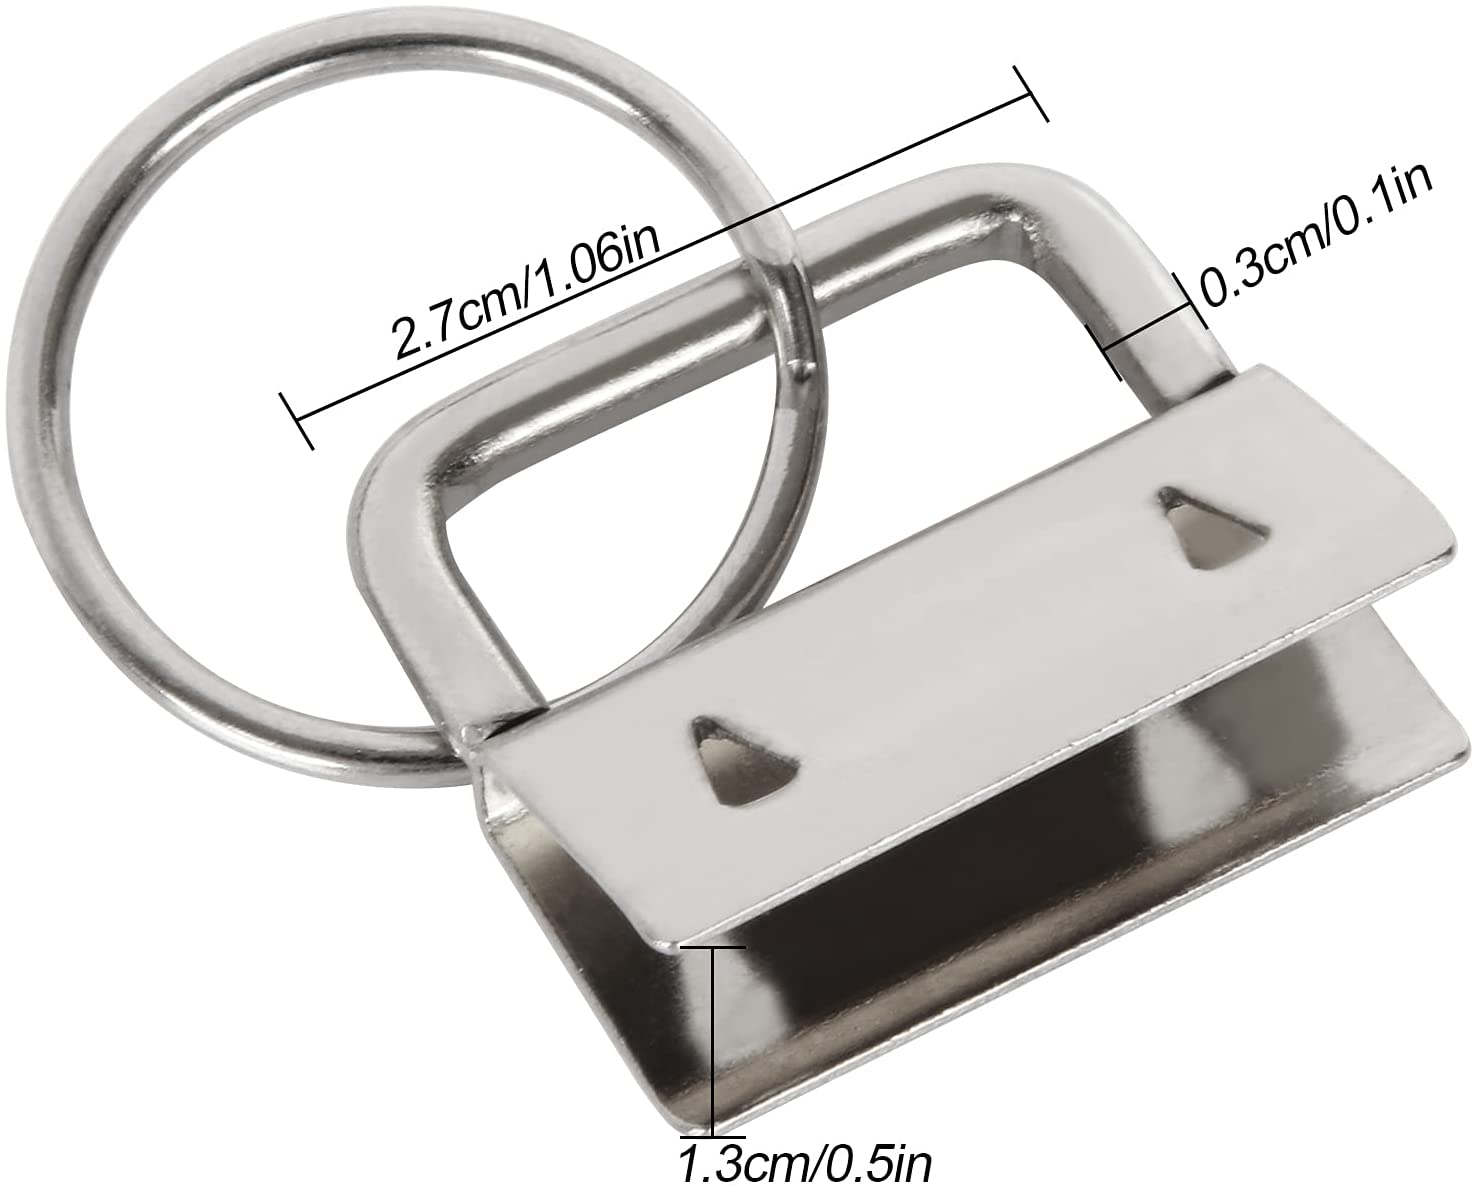 Trimming Shop 25mm Key Fob Hardware Silver Lanyard Wristlet Key